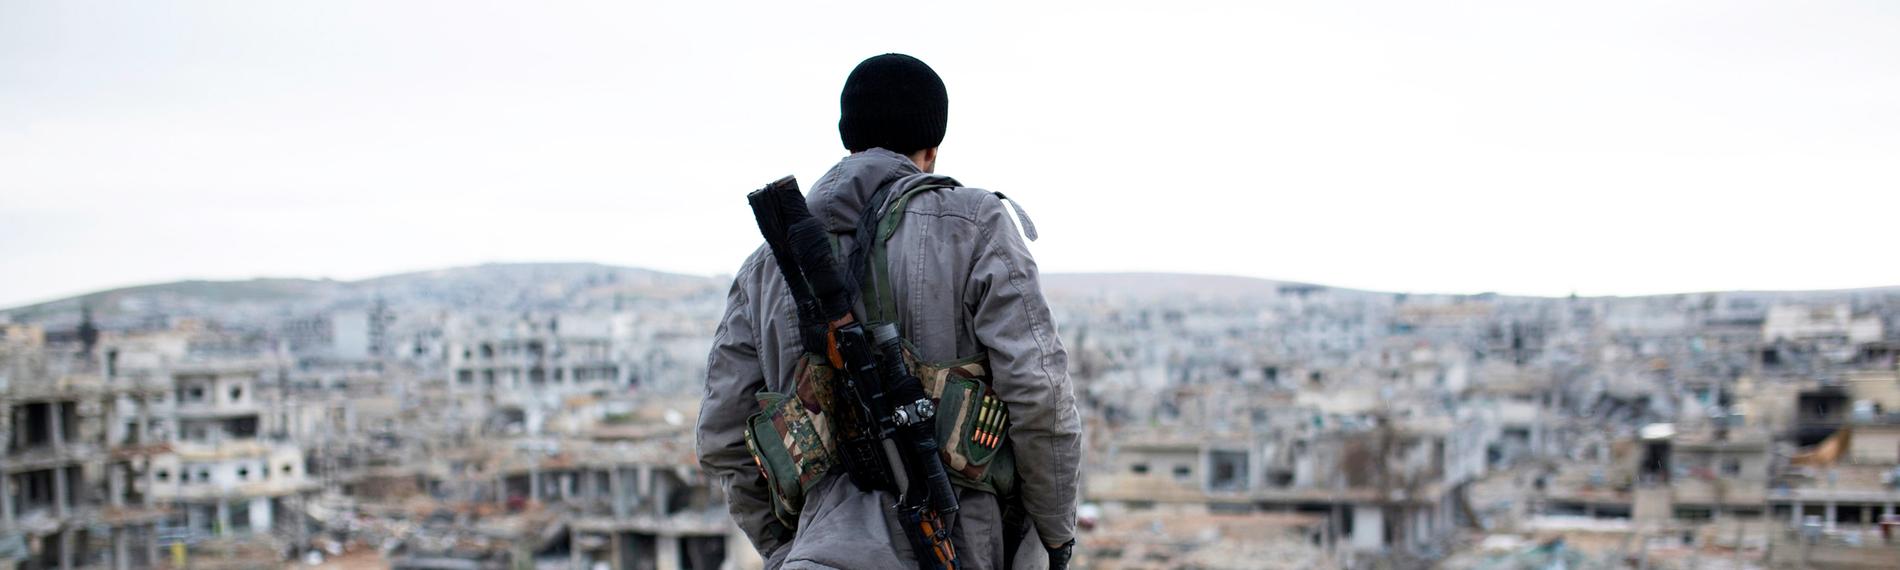 "Die Kurden – Unterdrückung, Terrorismus und Verrat": Ein bewaffneter kurdischer Kämpfer steht mit dem Rücken zur Kamera am Rand eines zerstörten Hauses und schaut auf die ebenfalls zerstörte Stadt vor ihm.